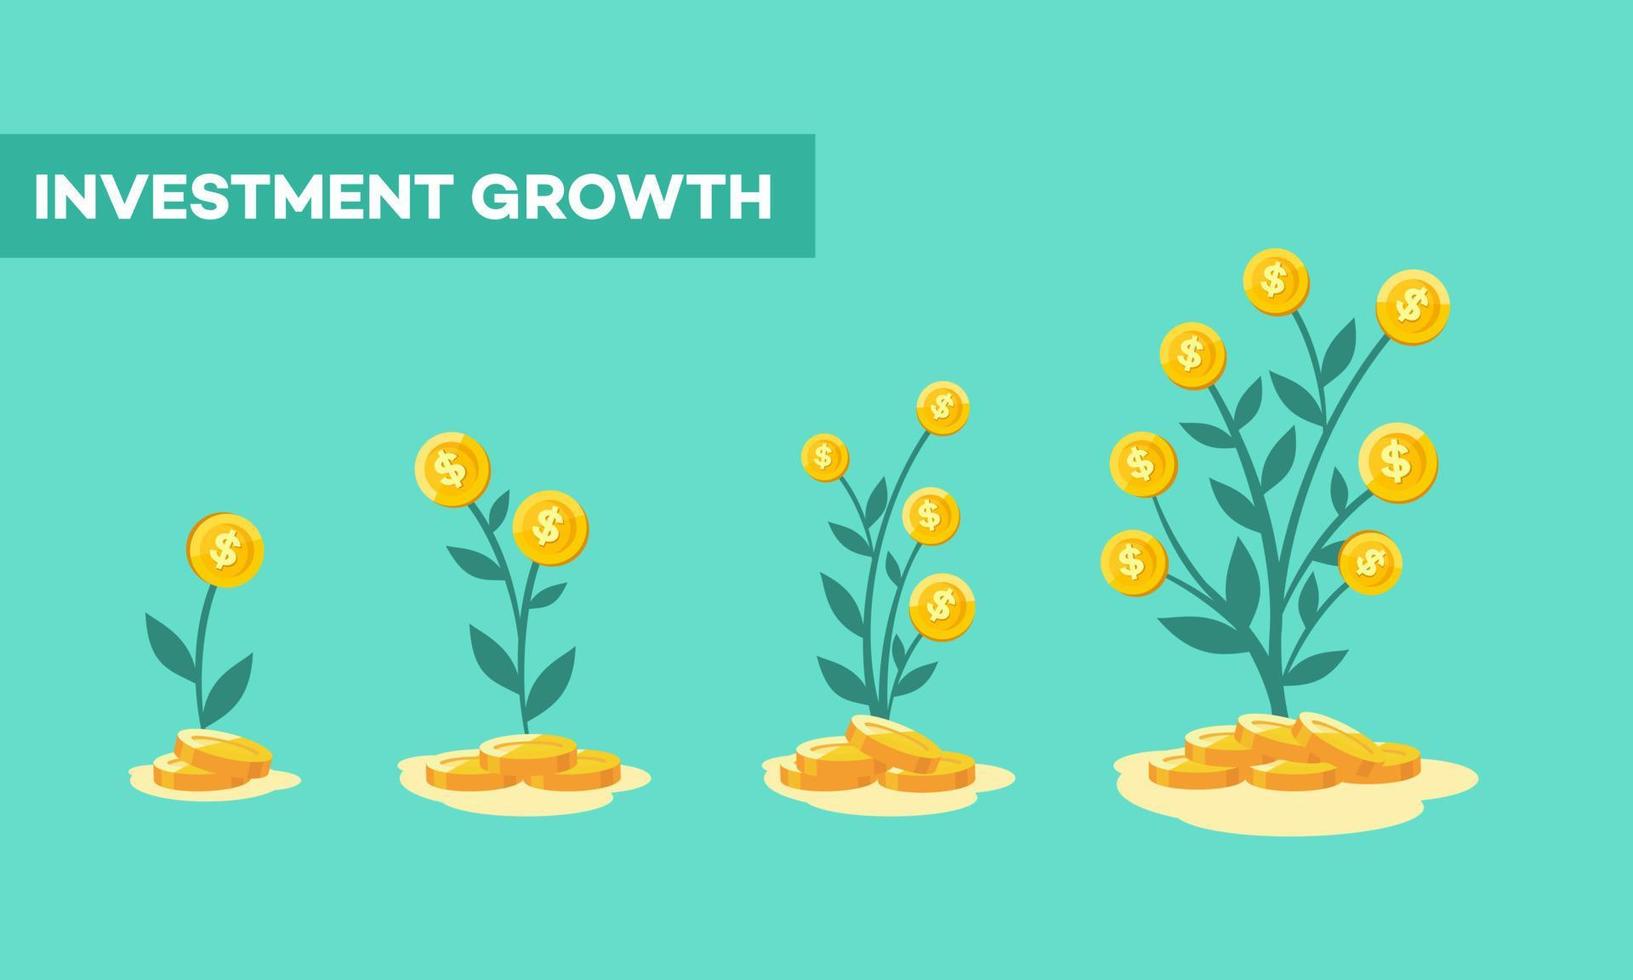 ilustración de invertir dinero. plantas de árboles de dinero que crecen y se desarrollan a partir de inversiones financieras. el concepto de ganancias crecientes en la inversión de recursos gráficos. vector